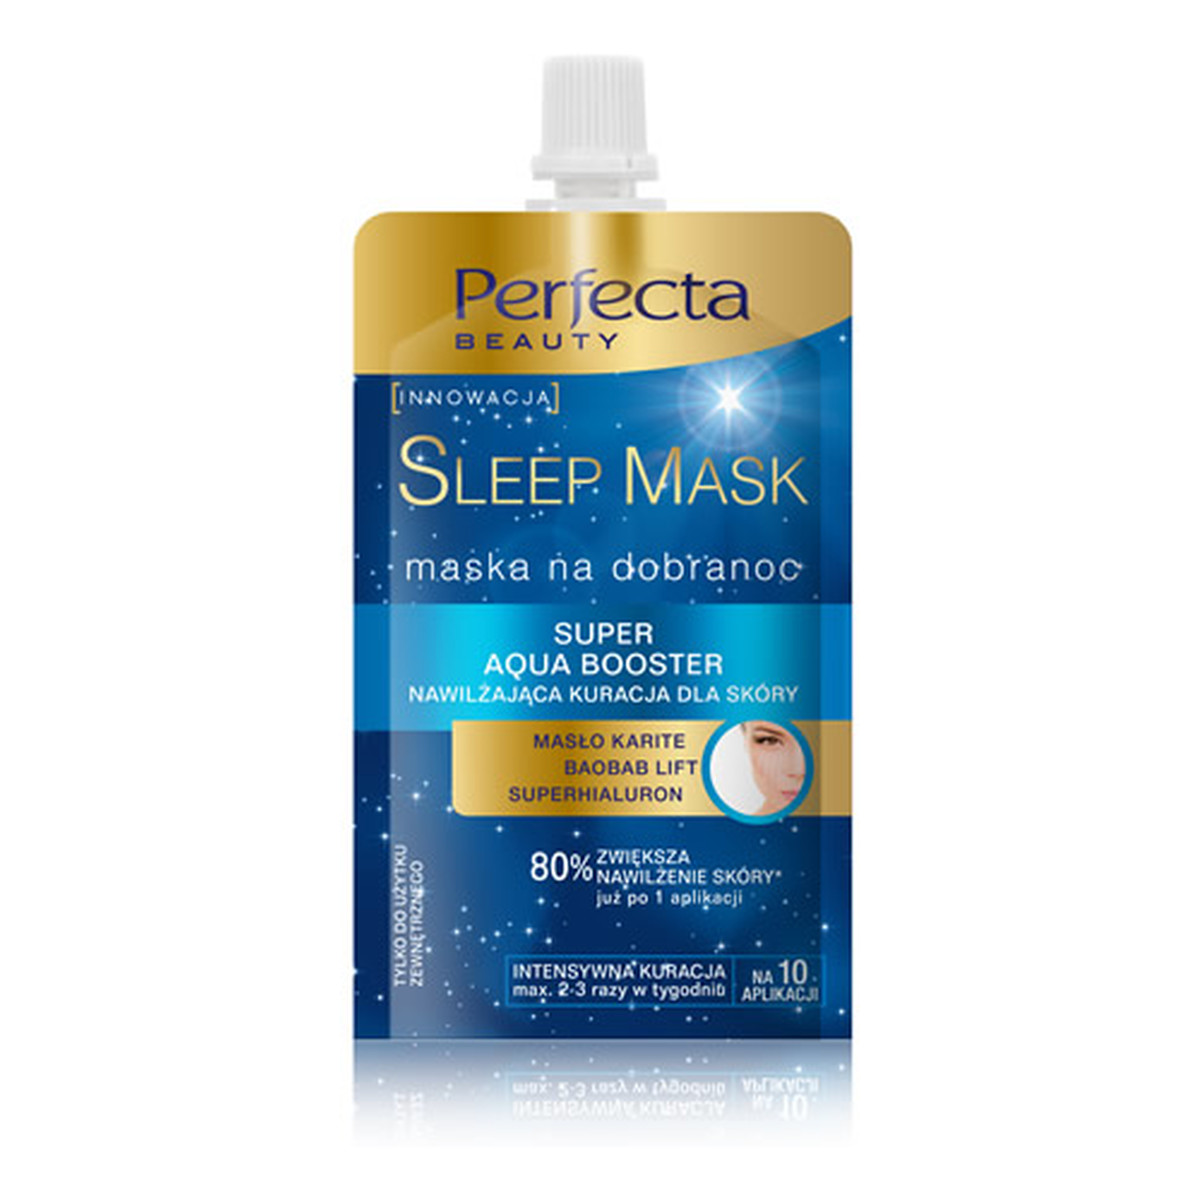 Perfecta Beauty Sleep Mask Super Aqua Booster Nawilżająca Kuracja Dla Skóry